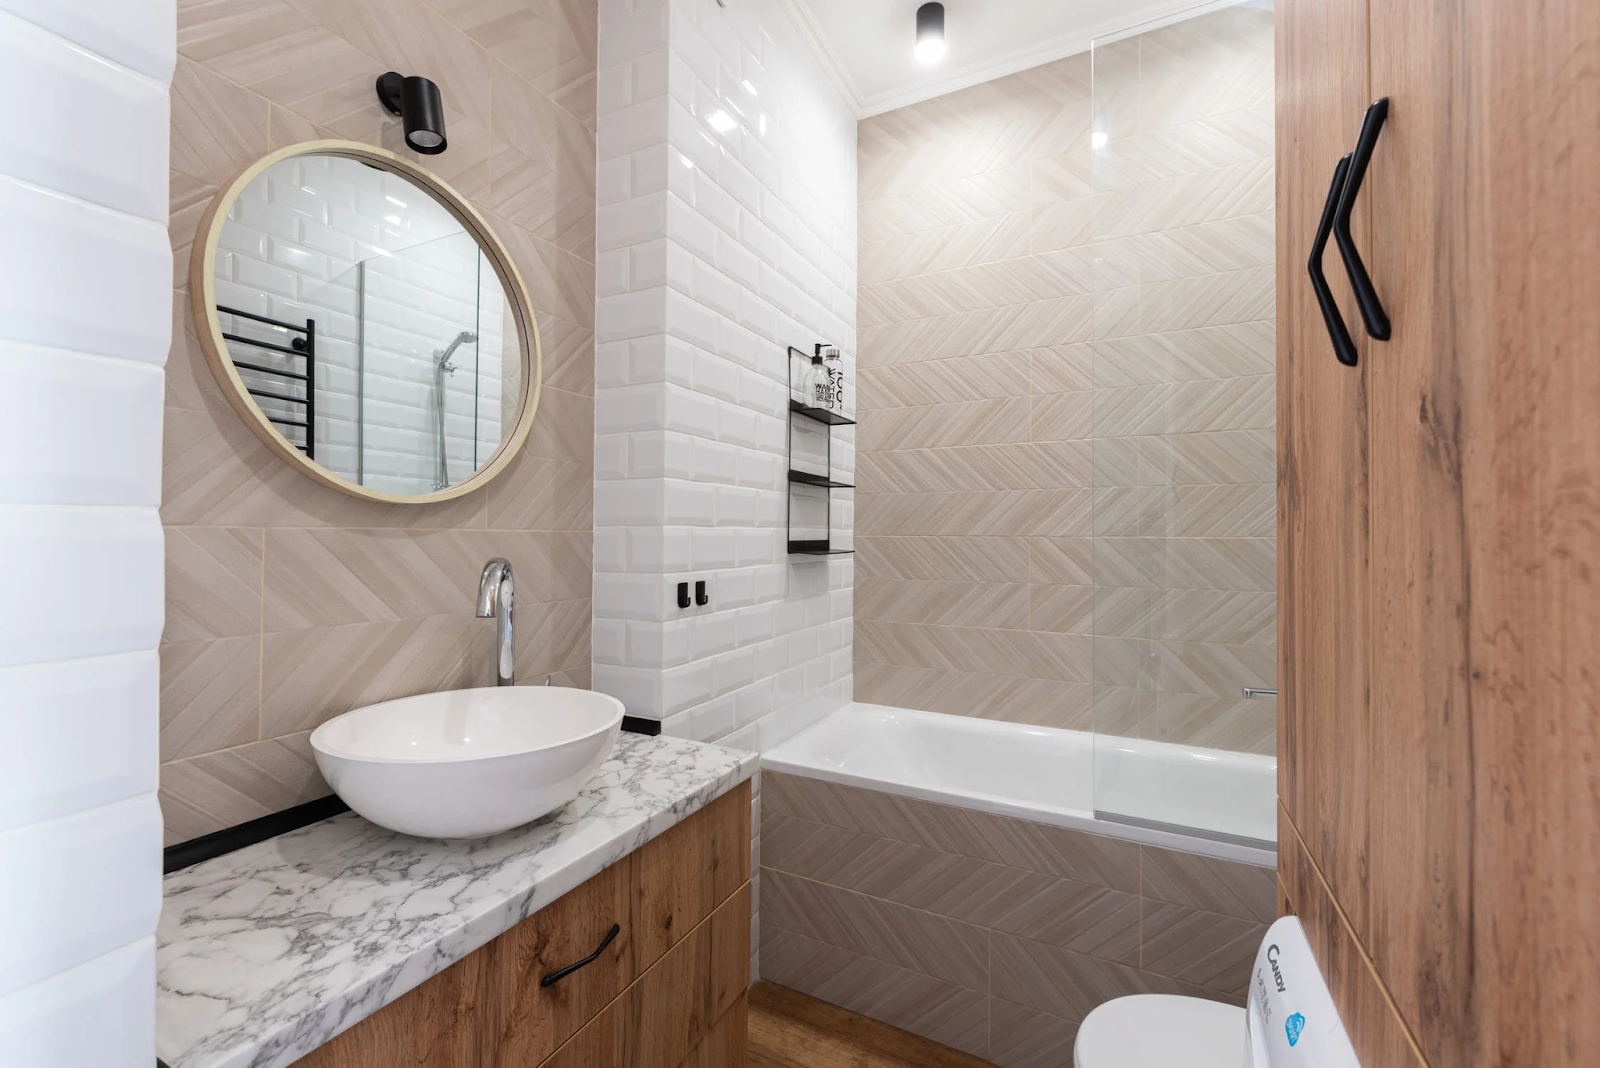 Bathroom with herringbone tile pattern; tile trends 2022; MGSD